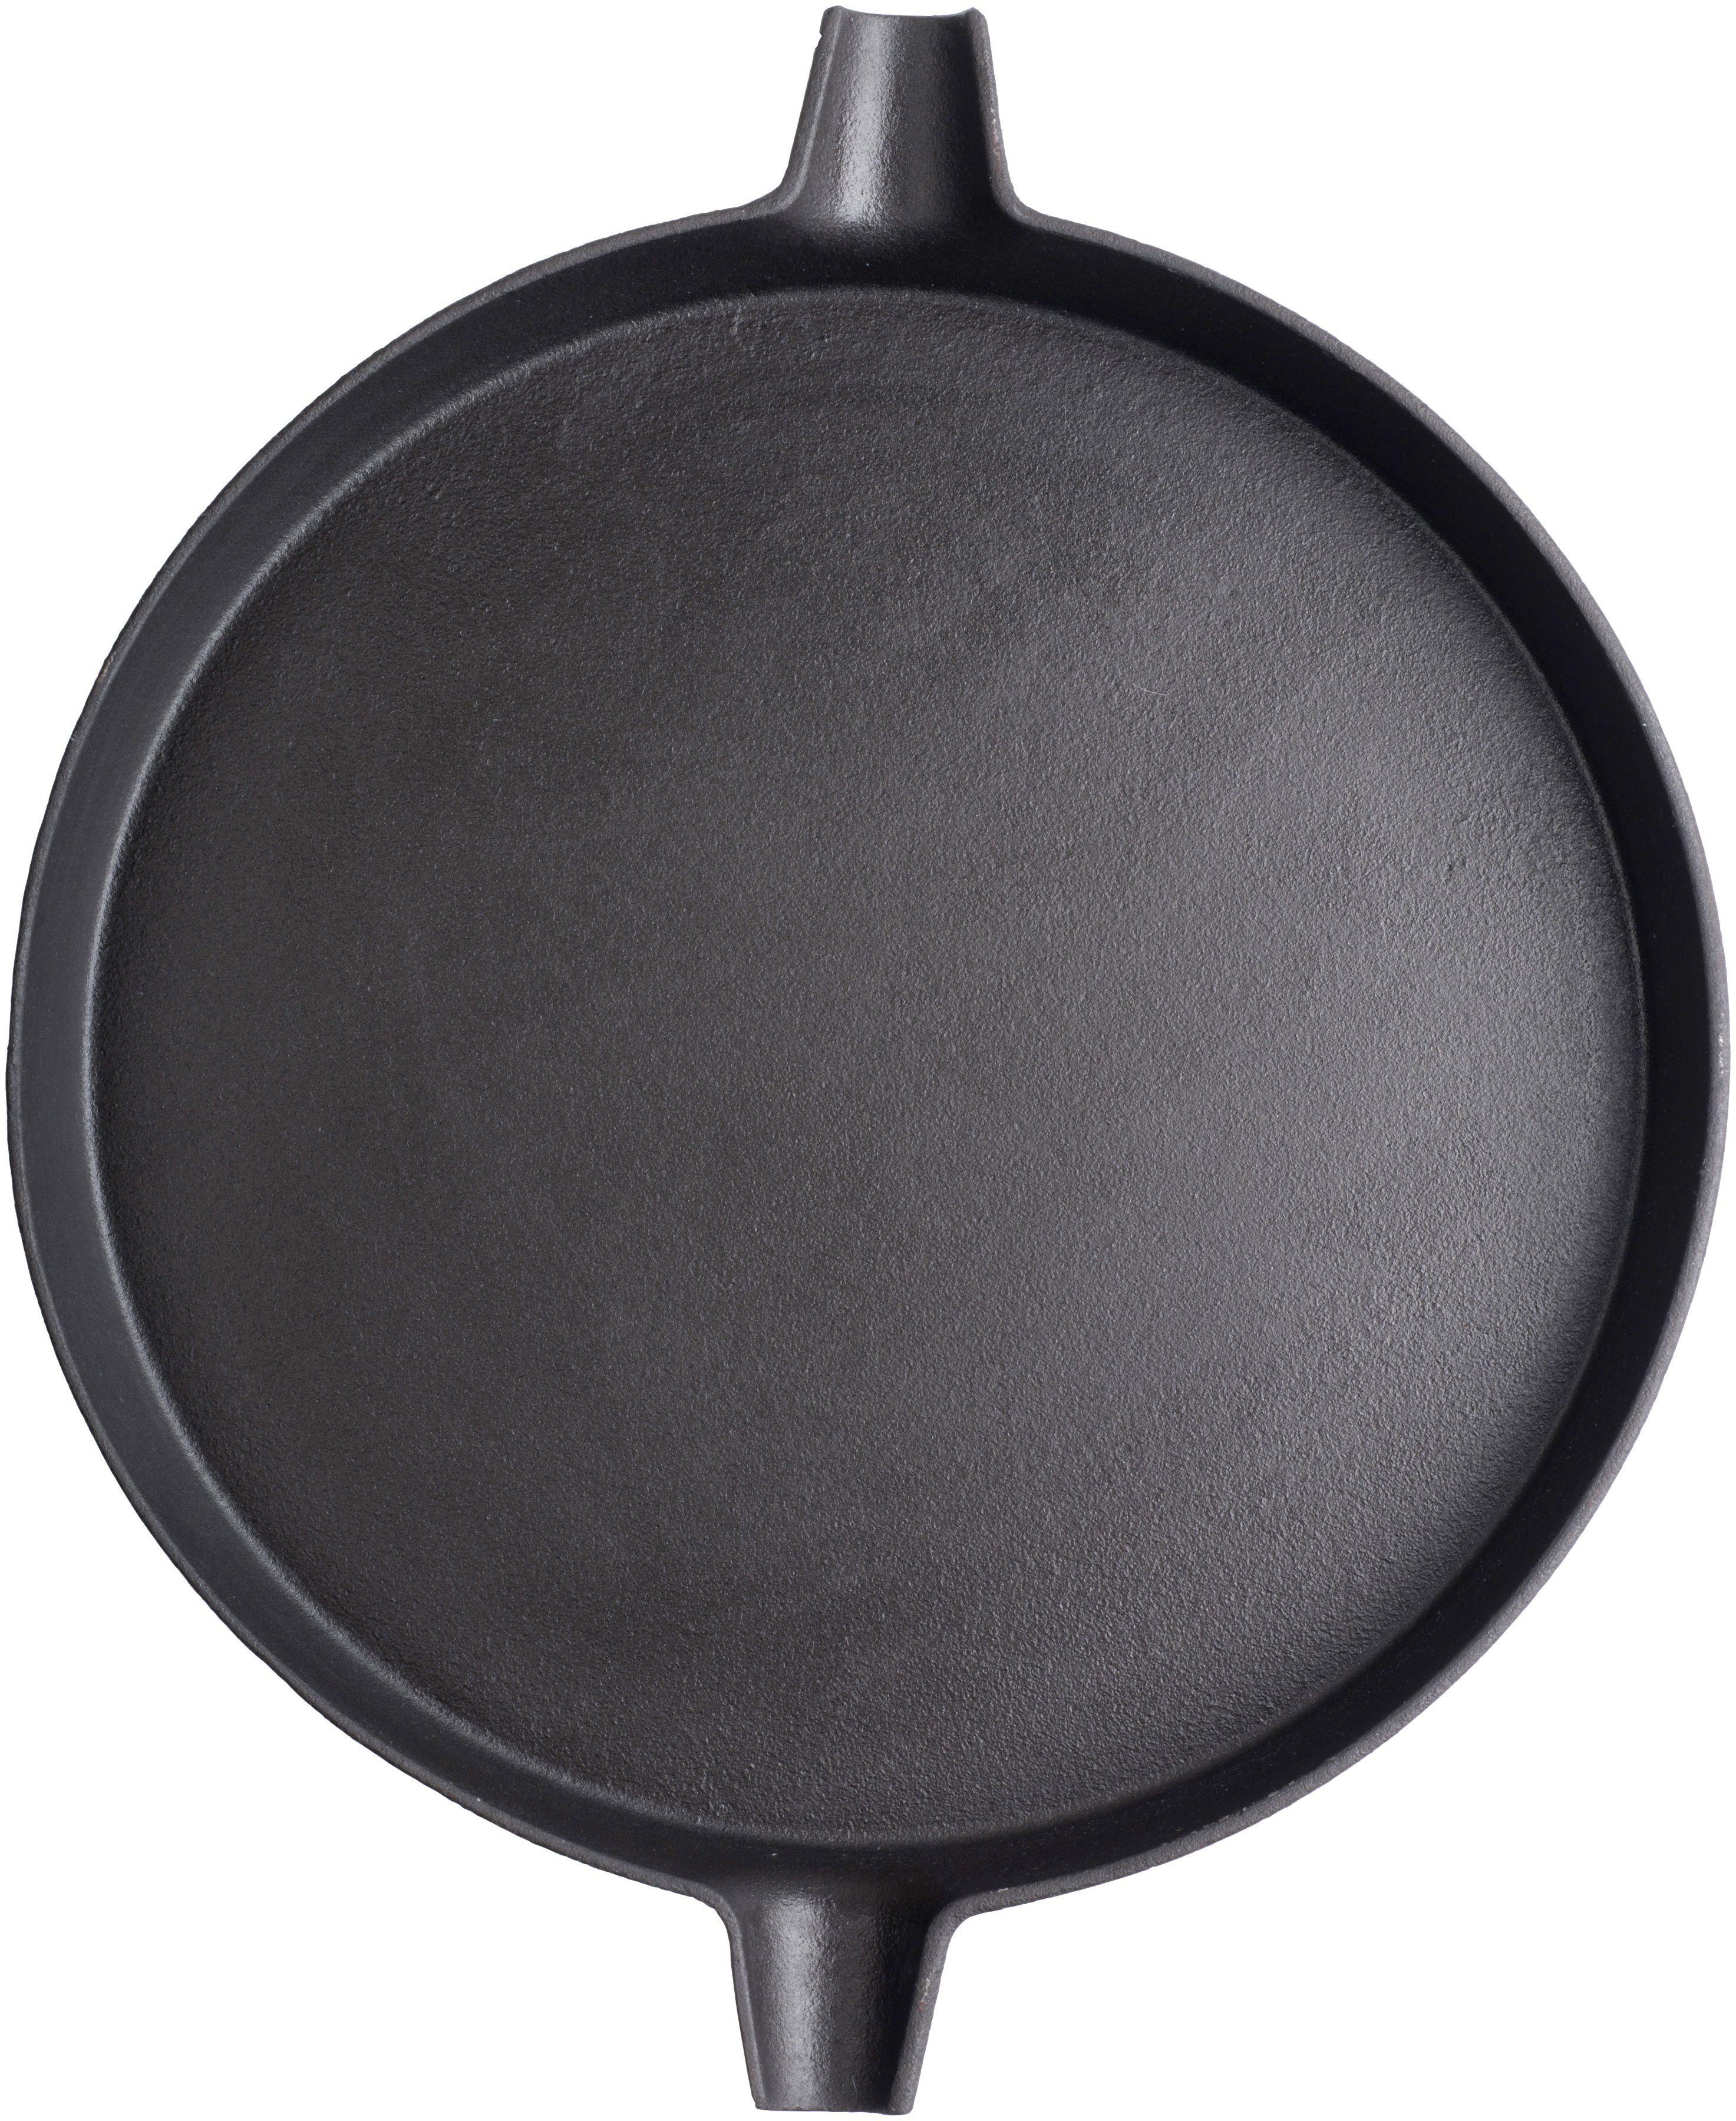 Tepro Grillpfanne, Gusseisen, Durchmesser 31,7 cm